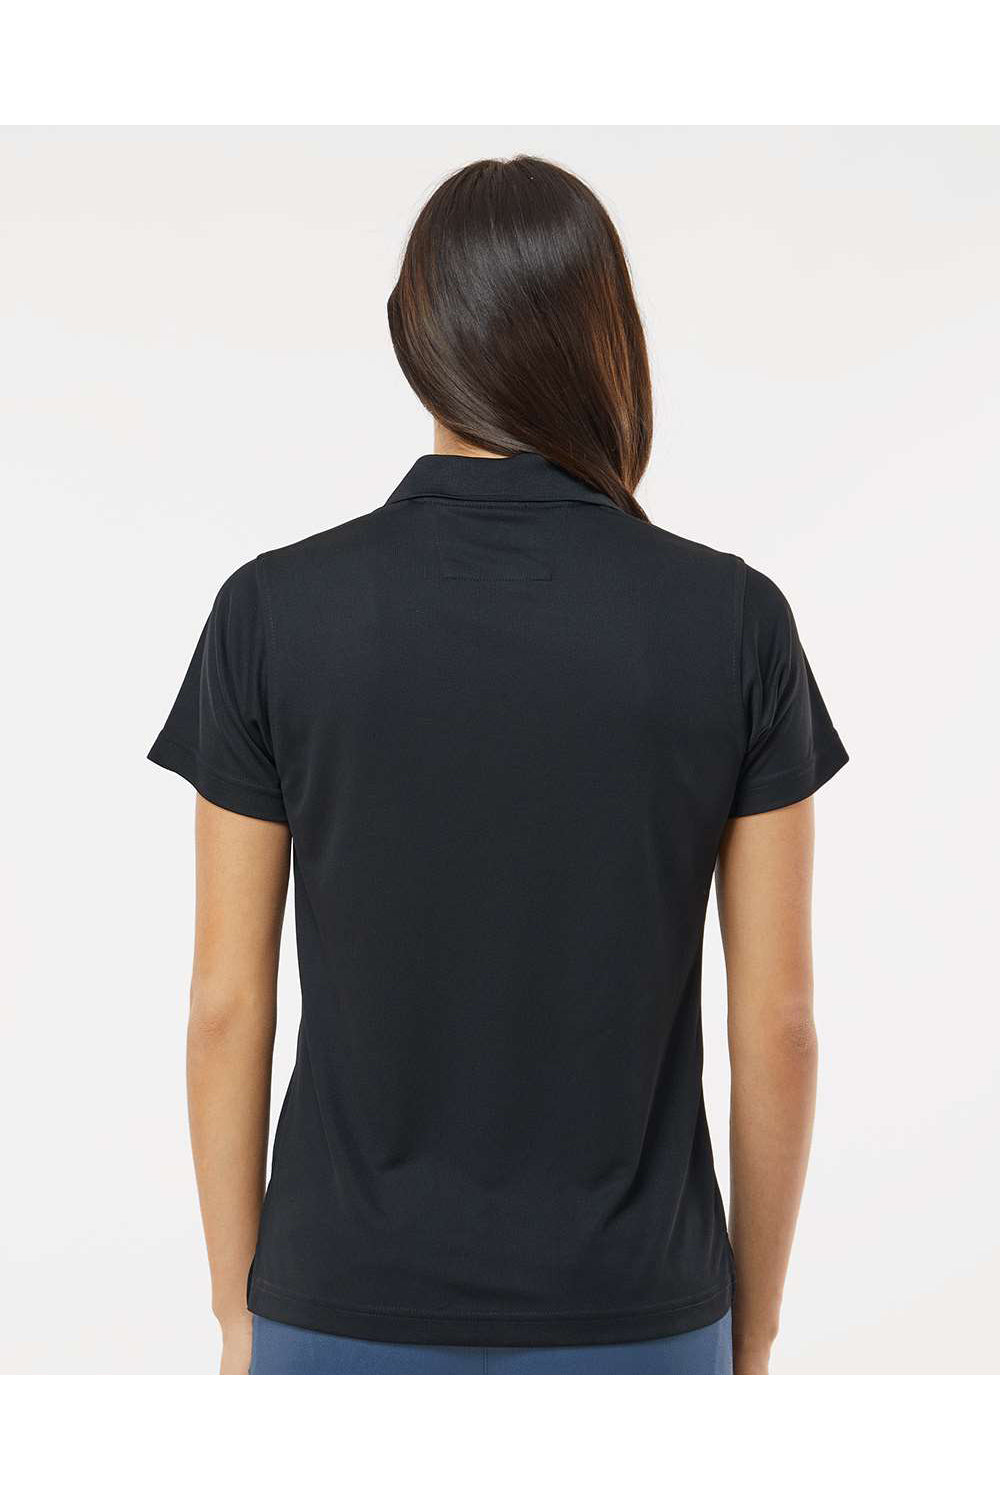 Paragon 104 Womens Saratoga Performance Mini Mesh Short Sleeve Polo Shirt Black Model Back